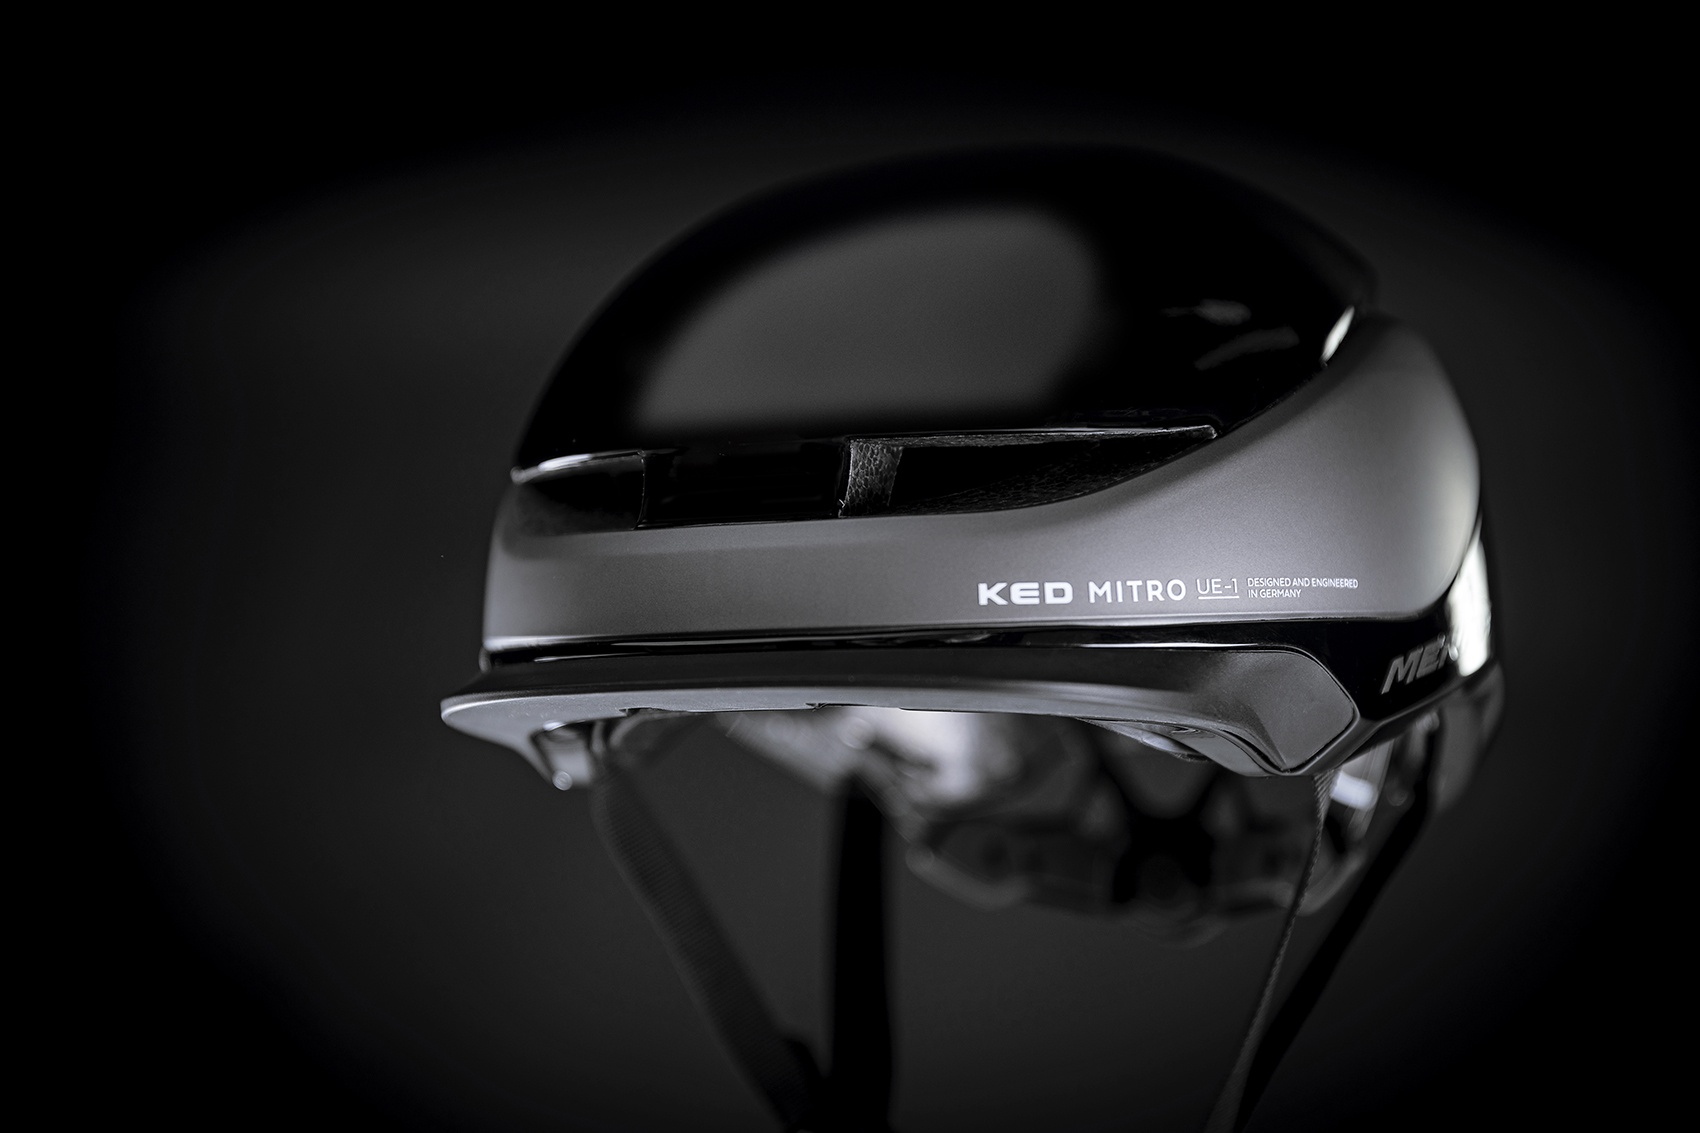 Trademark The beginning genius Merida lança novo capacete KED MITRO UE-1